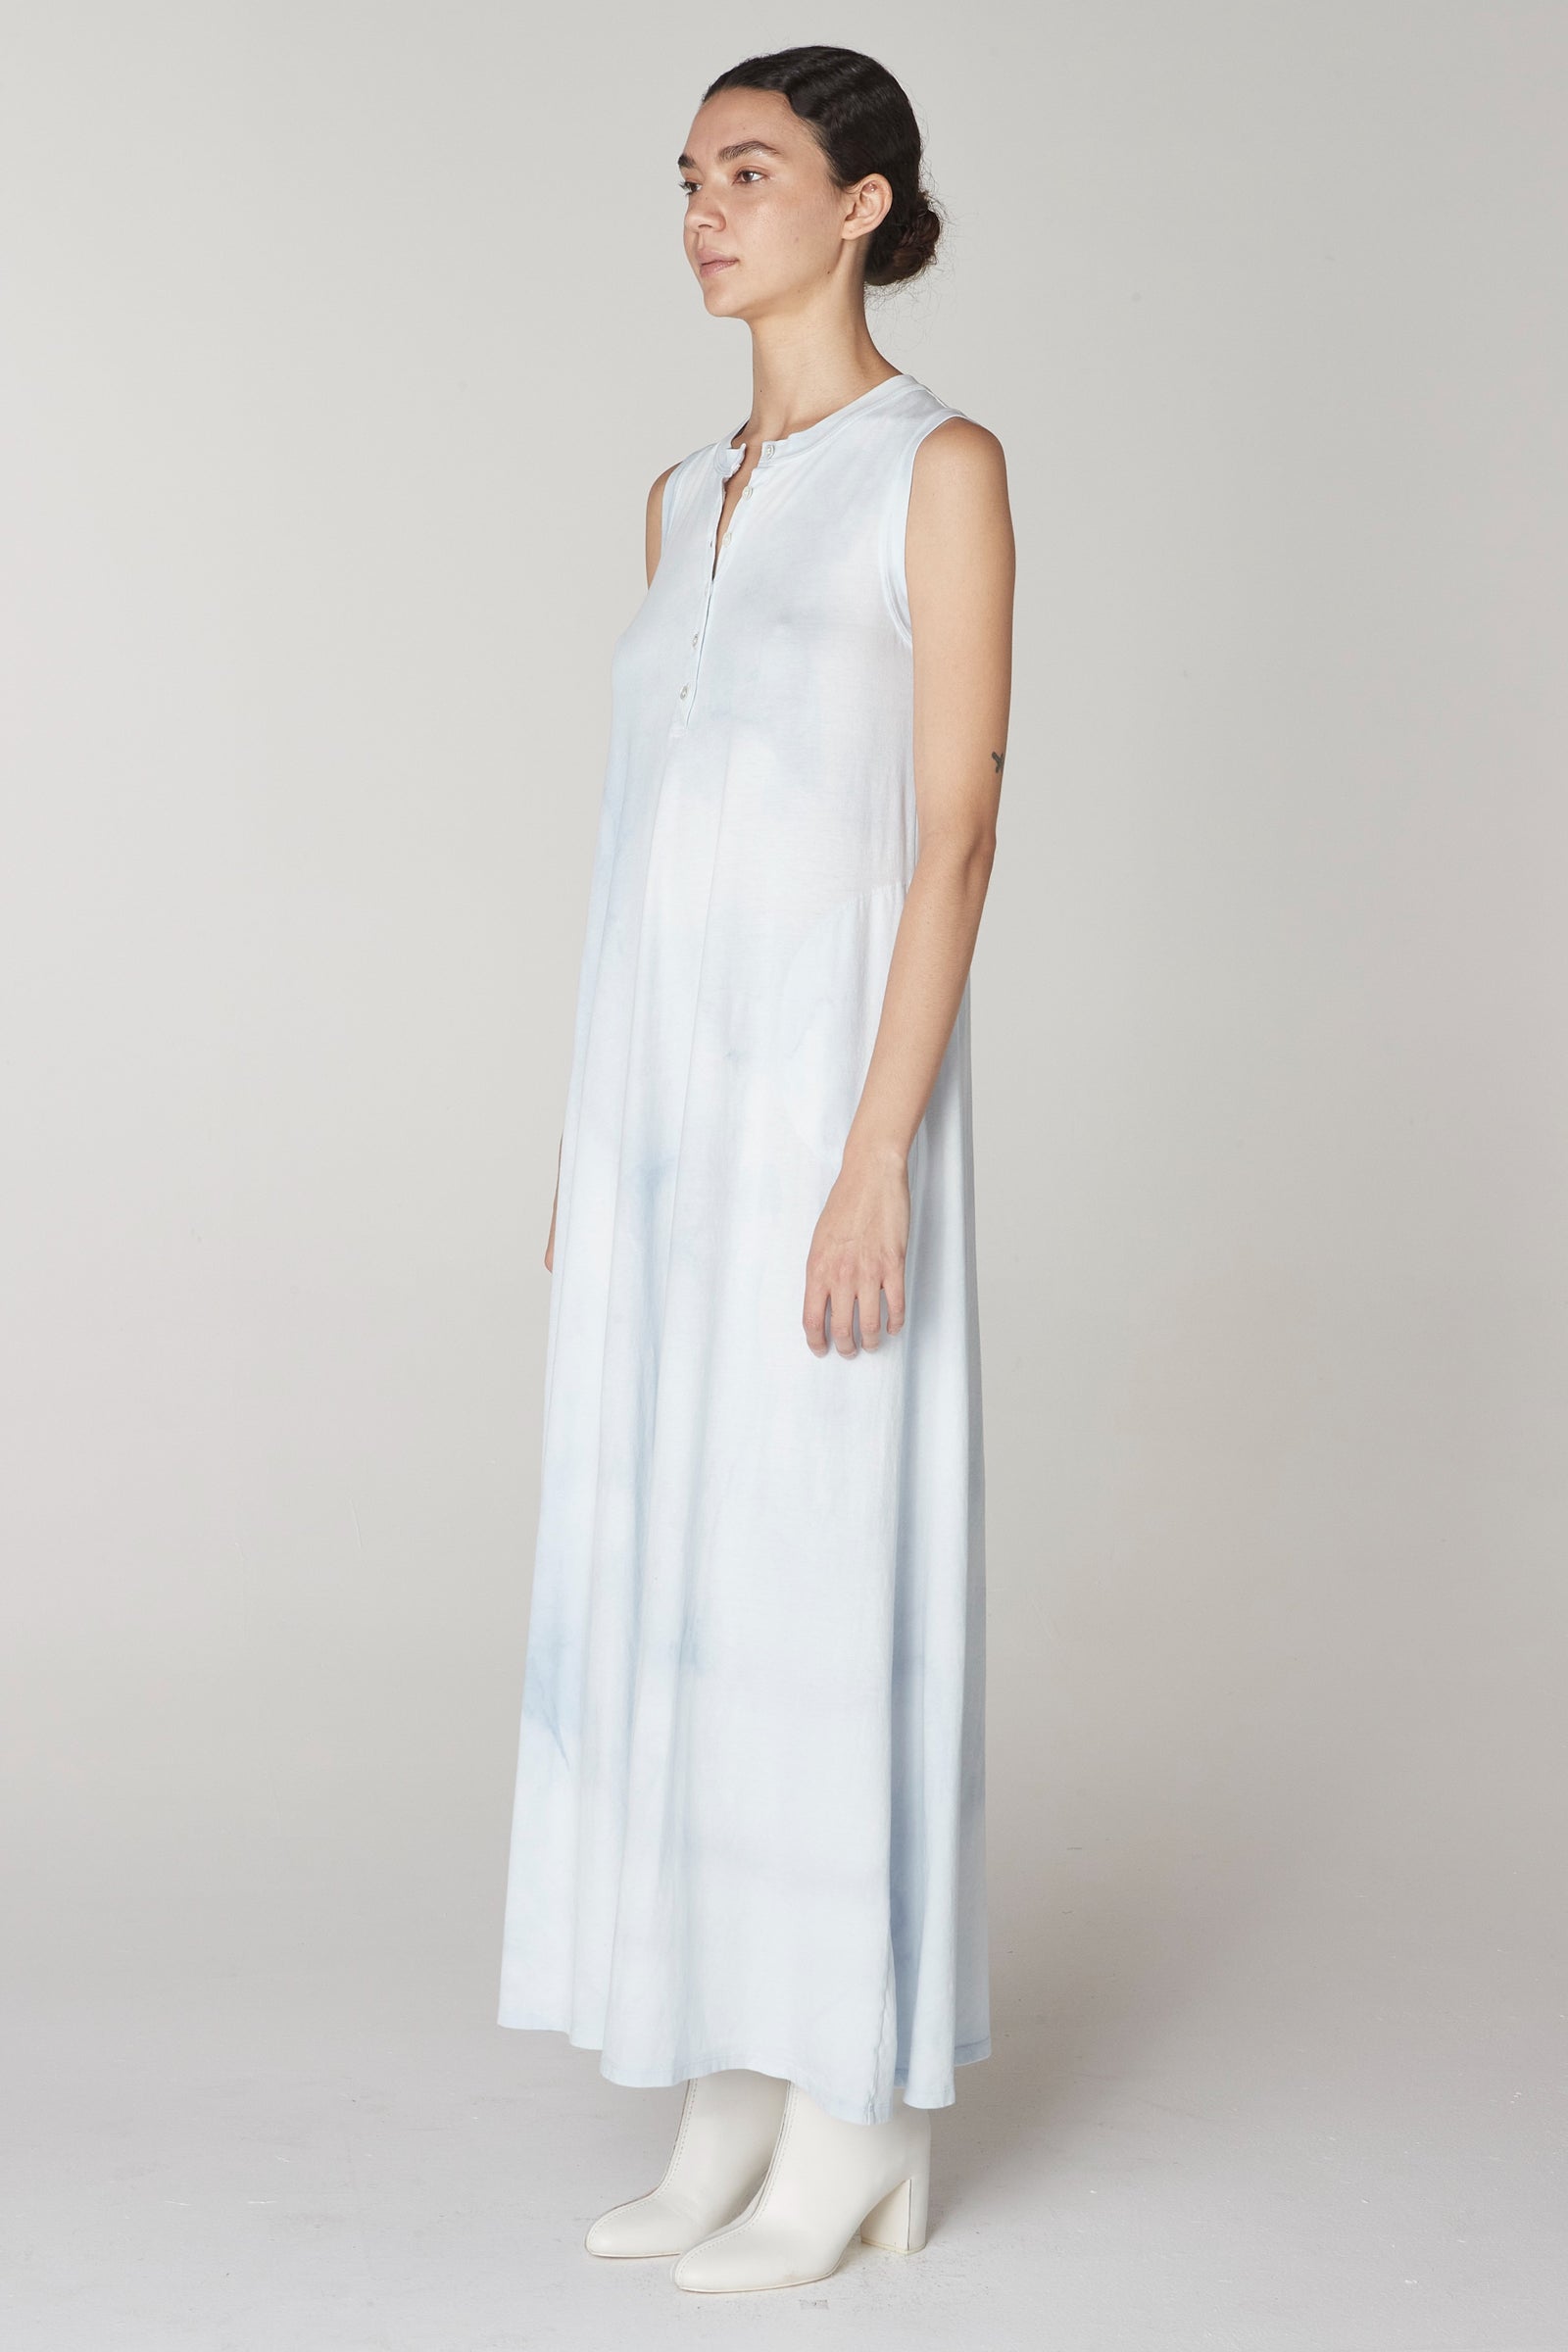 Soft Blue Treatment Sleeveless Christy Dress – Raquel Allegra